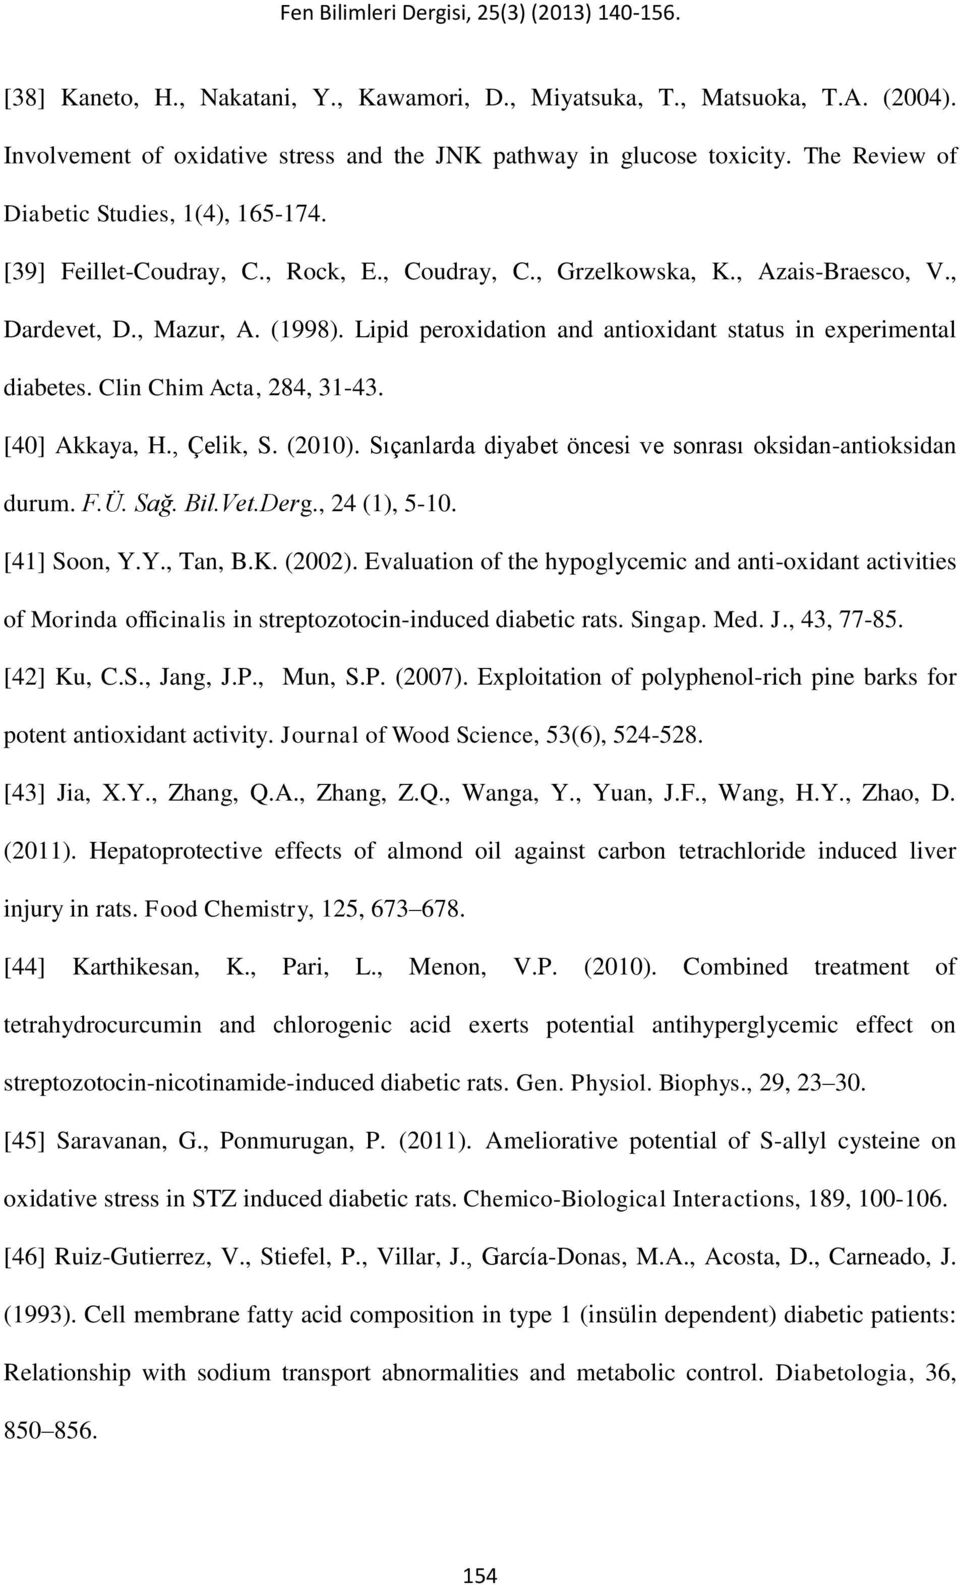 Lipid peroxidation and antioxidant status in experimental diabetes. Clin Chim Acta, 284, 31-43. [40] Akkaya, H., Çelik, S. (2010). Sıçanlarda diyabet öncesi ve sonrası oksidan-antioksidan durum. F.Ü.